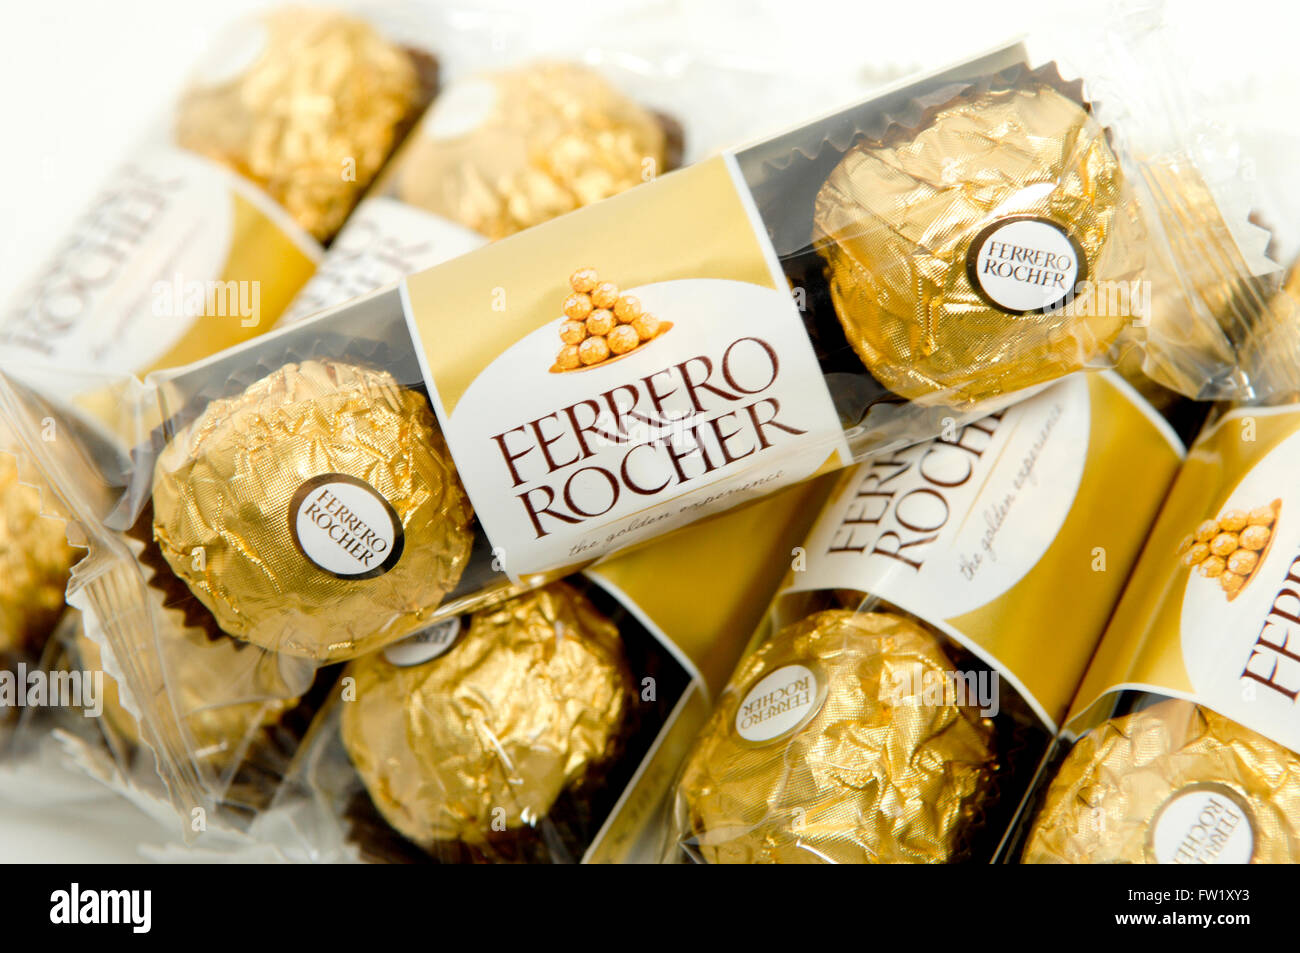 Ferrero Rocher è un premio, sferica dolce al cioccolato prodotta dall'Italiana chocolatier Ferrero SpA. Foto Stock